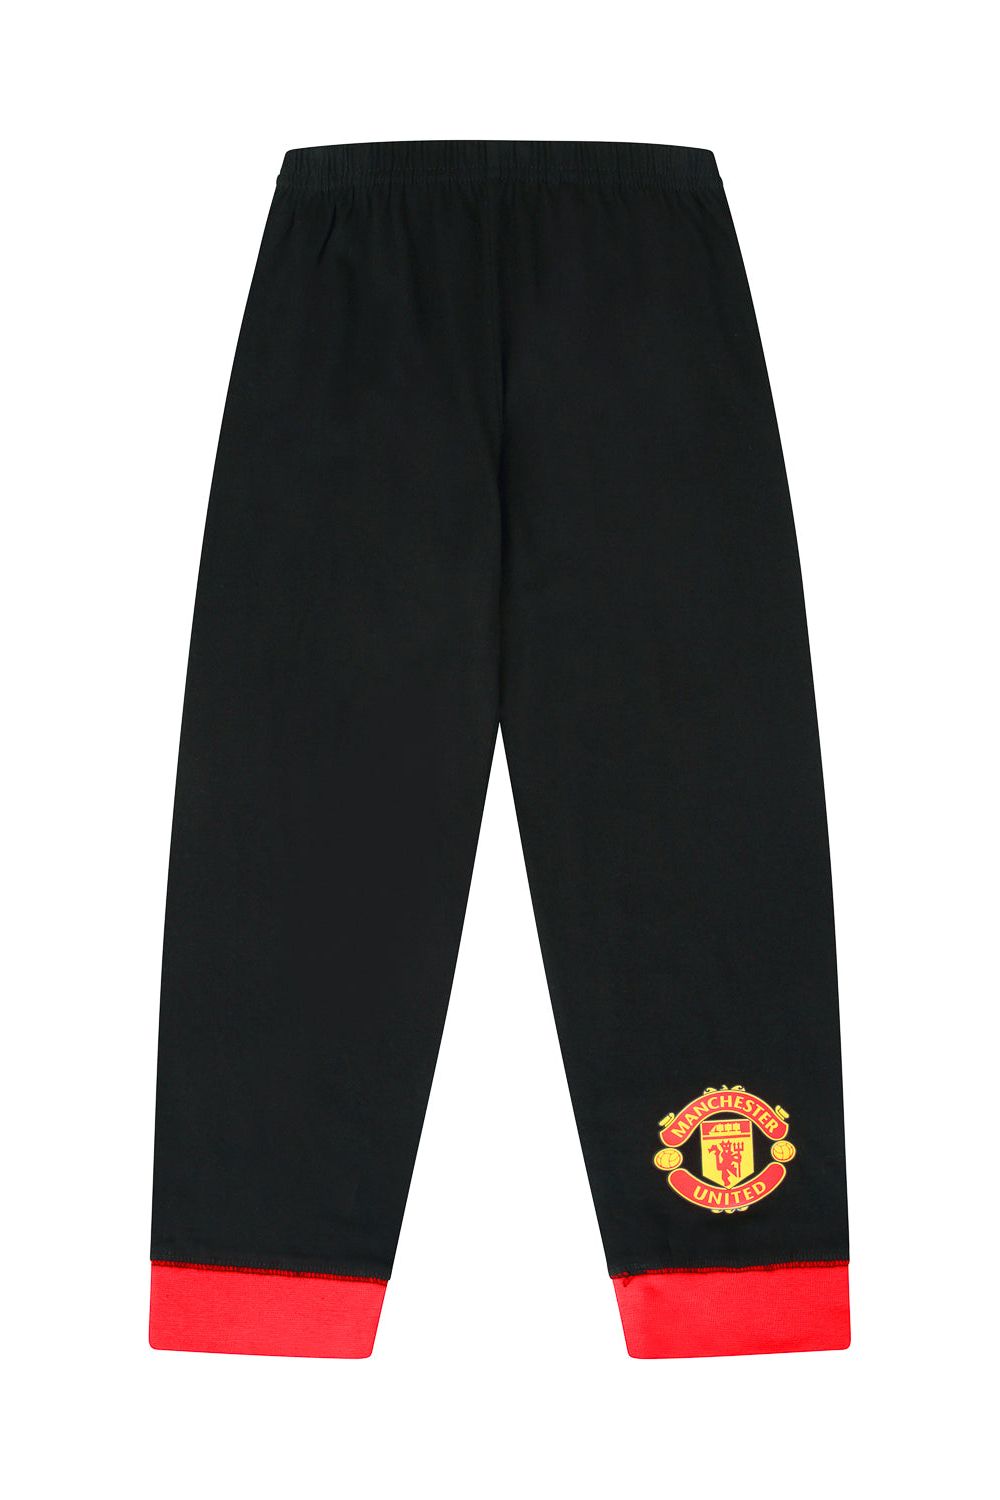 Official Manchester United FC Pyjamas - Pyjamas.com